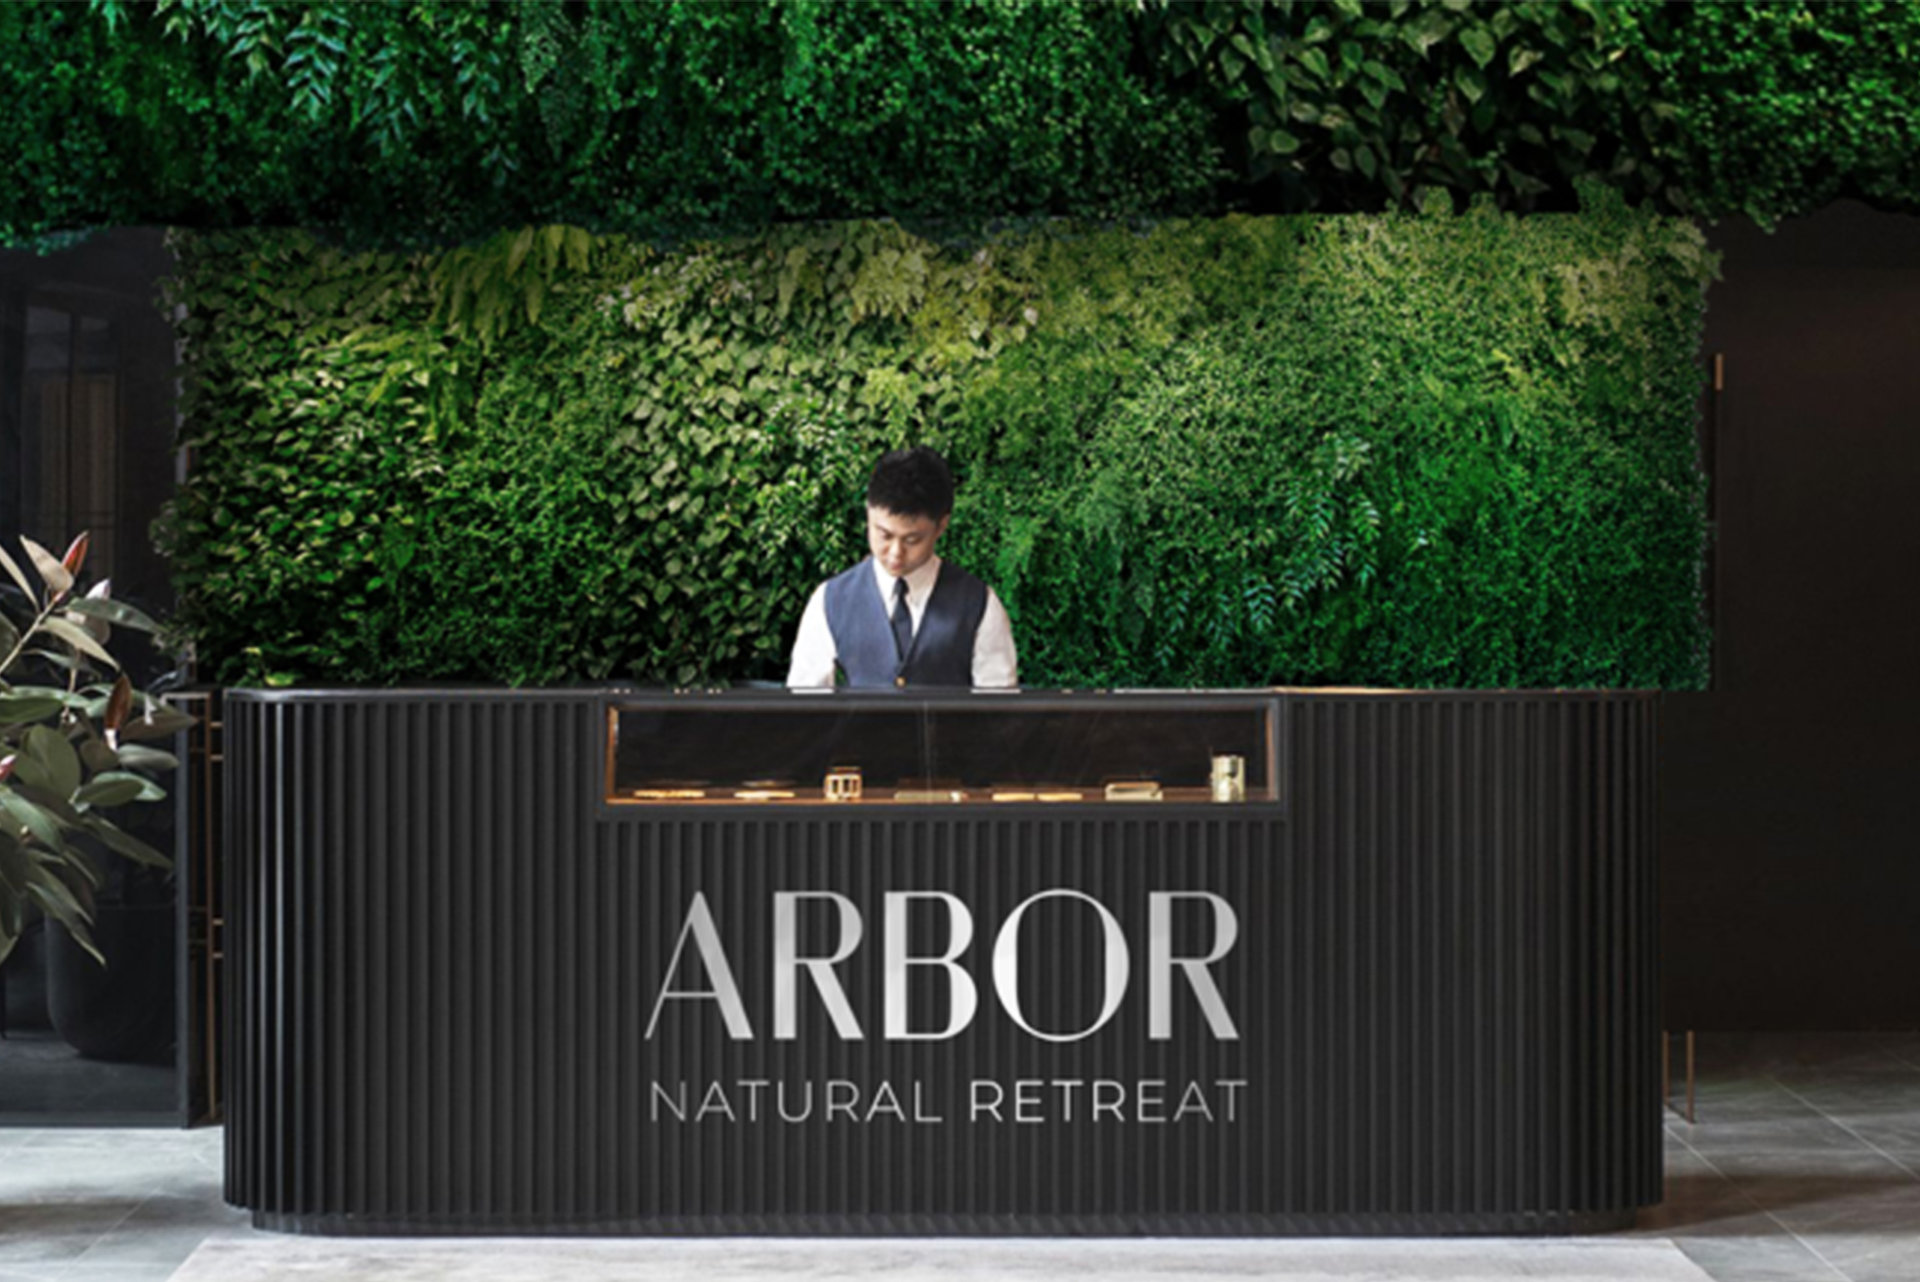 Rezeptionstresen des Arbor Natural Retreat mit Rezeptionist vor einer grünen Hecke im Eingangsbereich eines Hotels